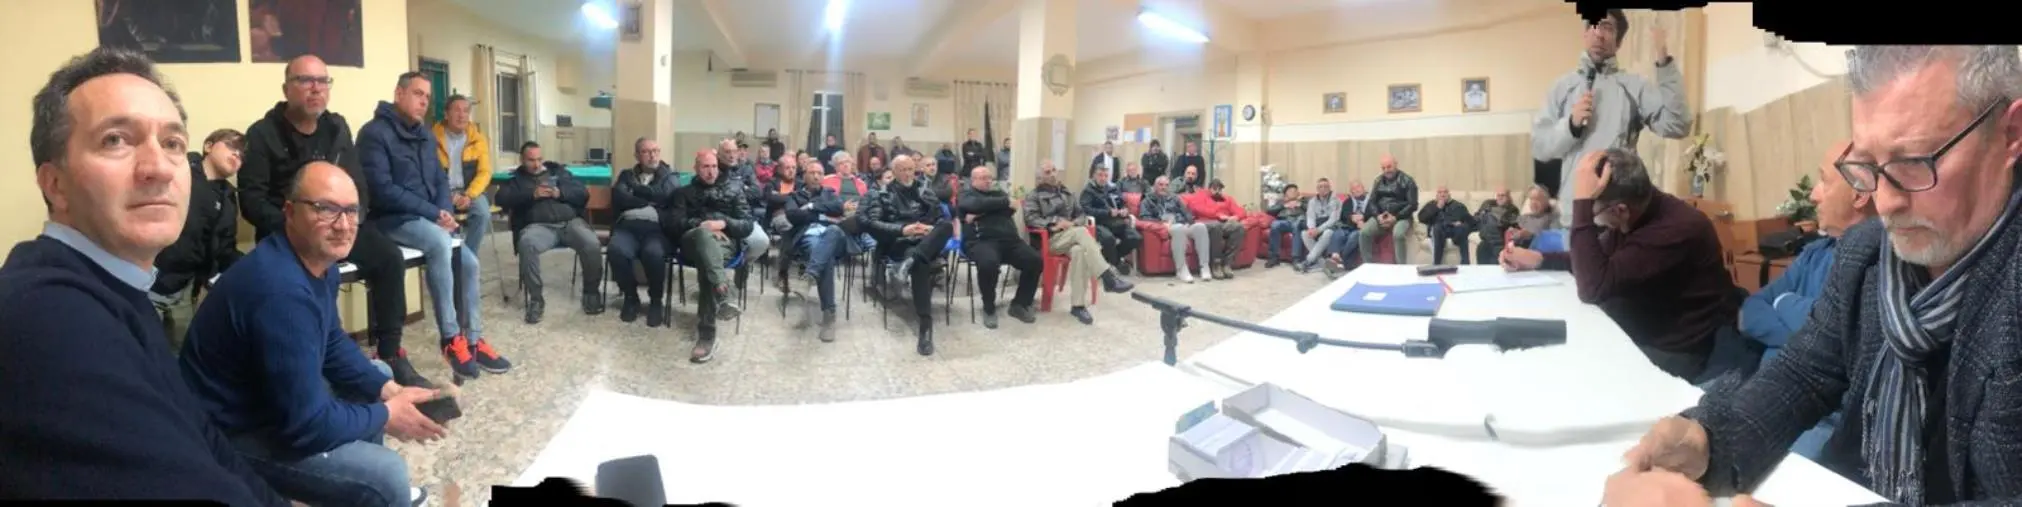 images Si è riunita l'associazione "Amici del Porto di Catanzaro": approvato il bilancio, si pensa al futuro 